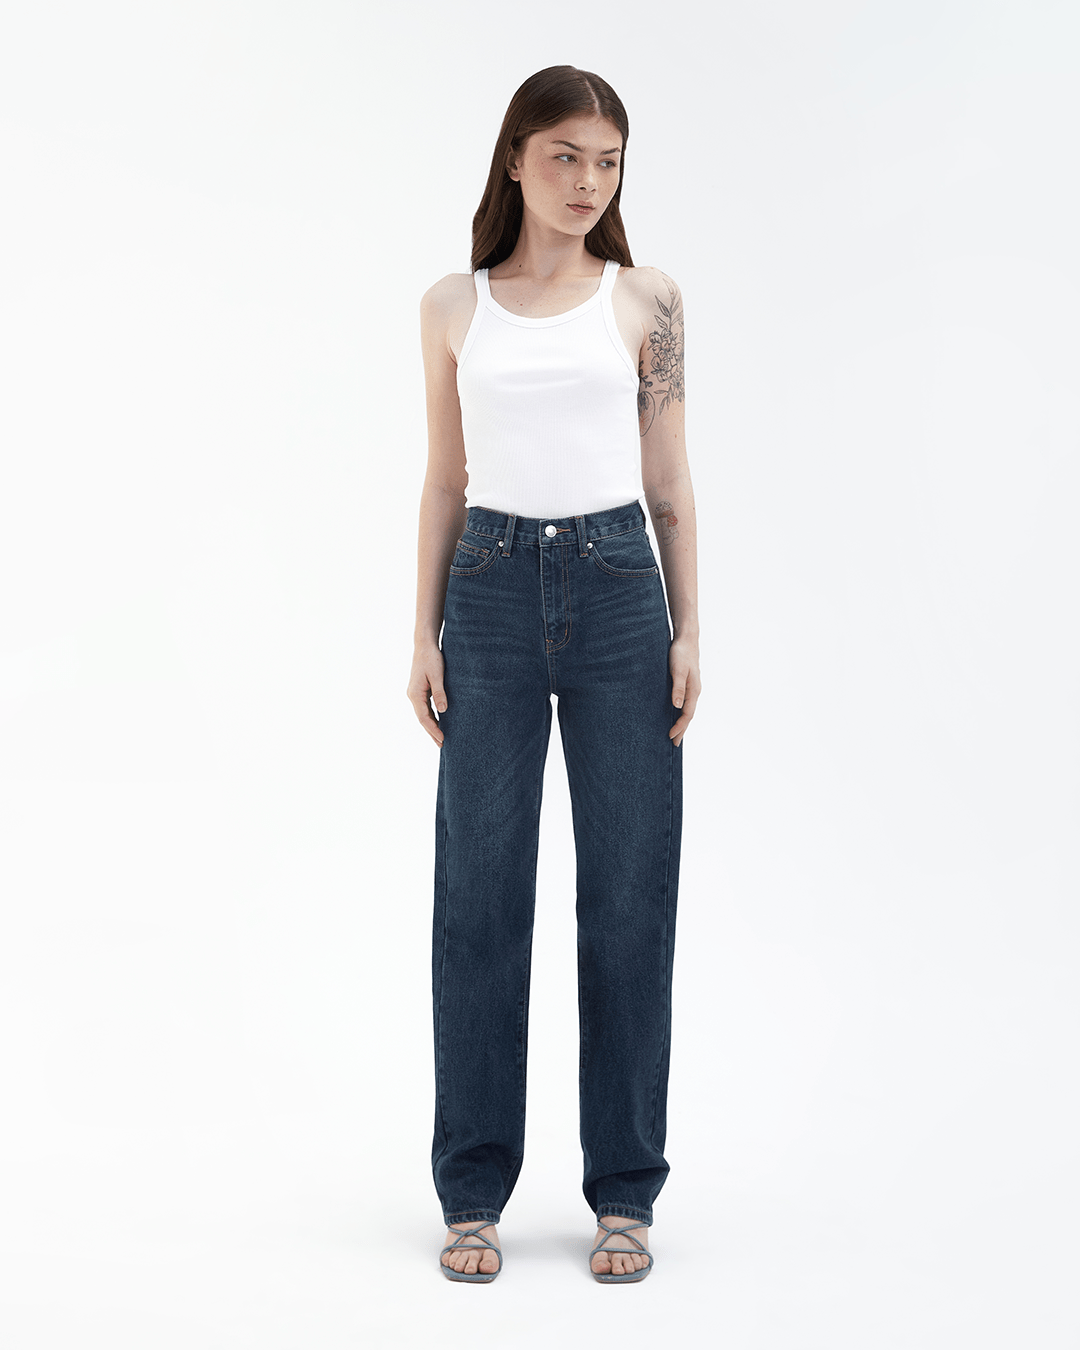 TheBlueTshirt - Quần Jeans Nữ Ống Rộng Màu Xanh Đậm thumbnail